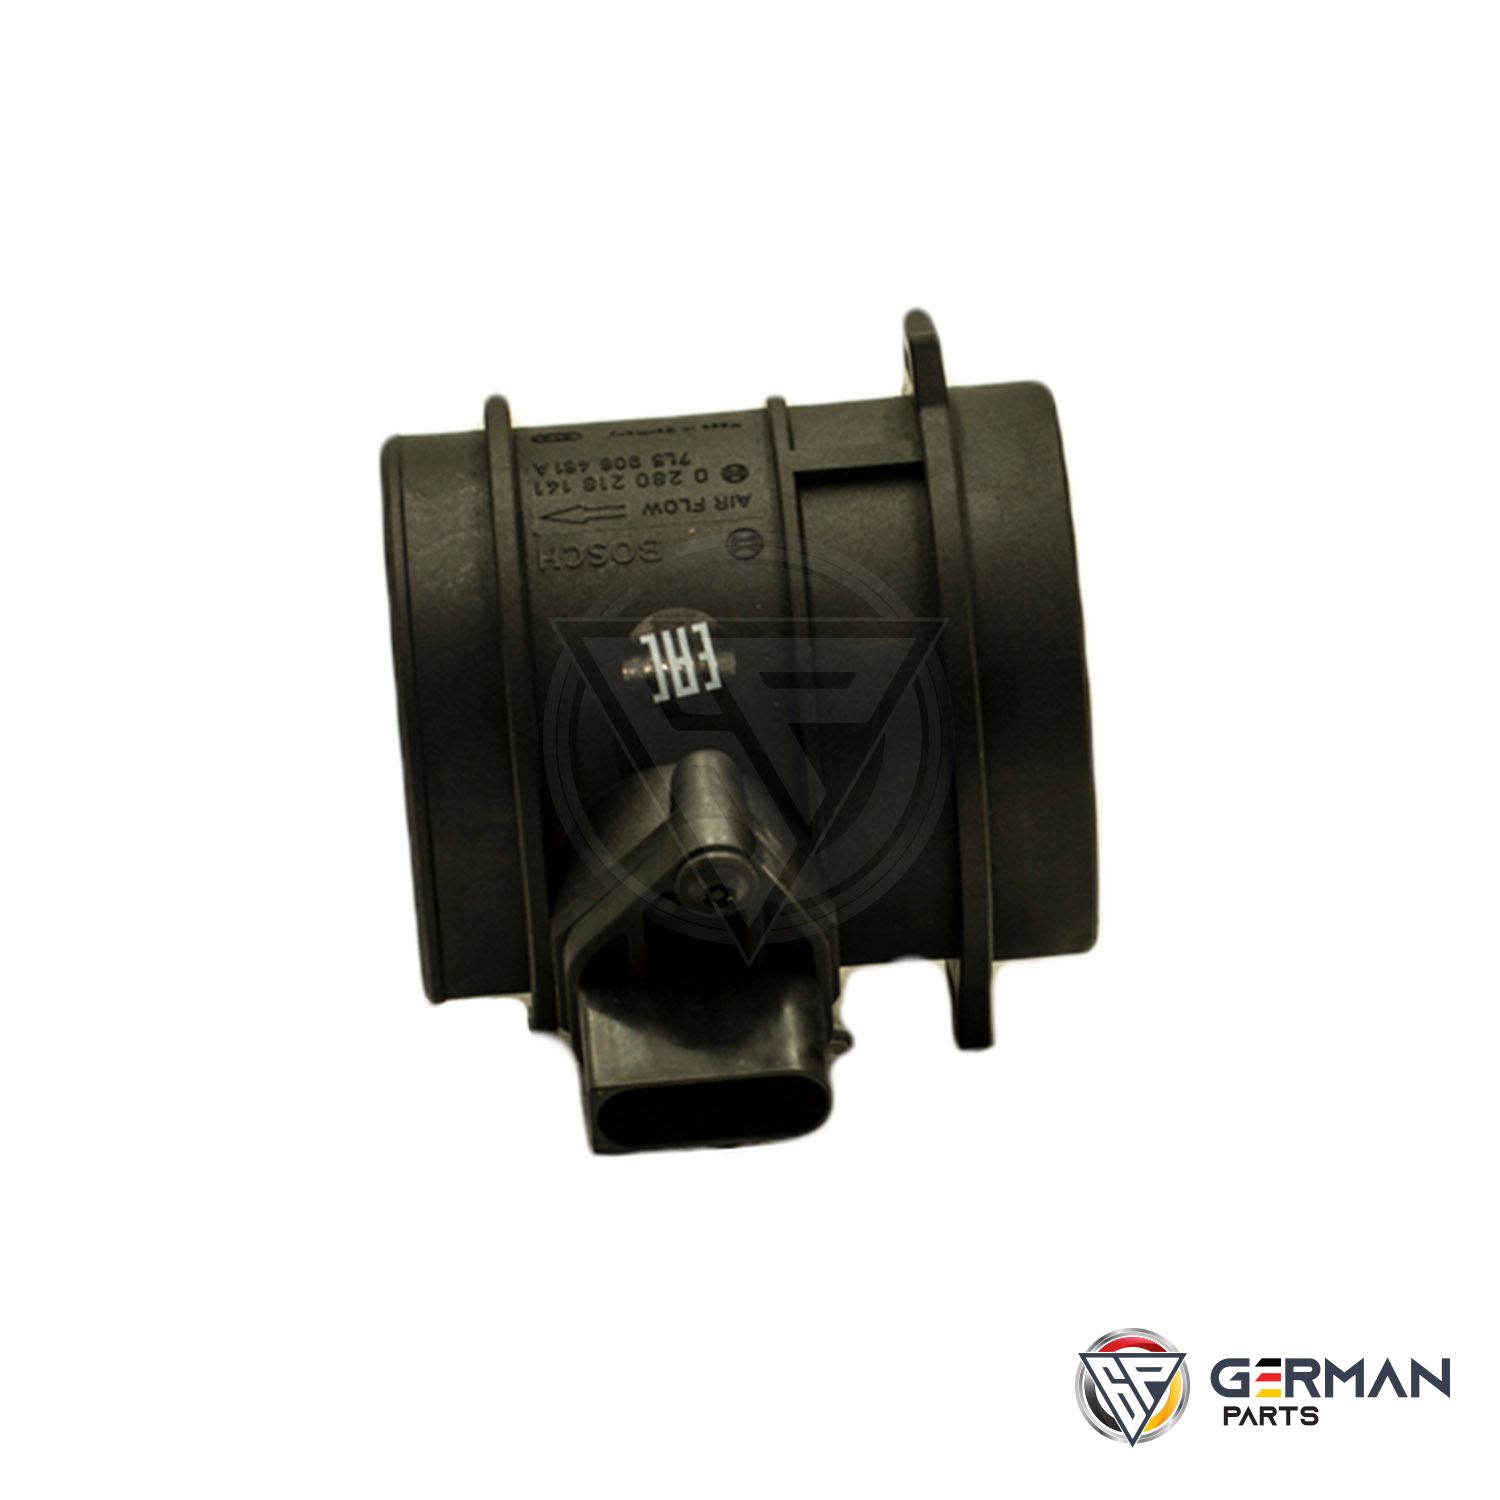 Buy Bosch Air Mass Sensor 95560612335 - German Parts